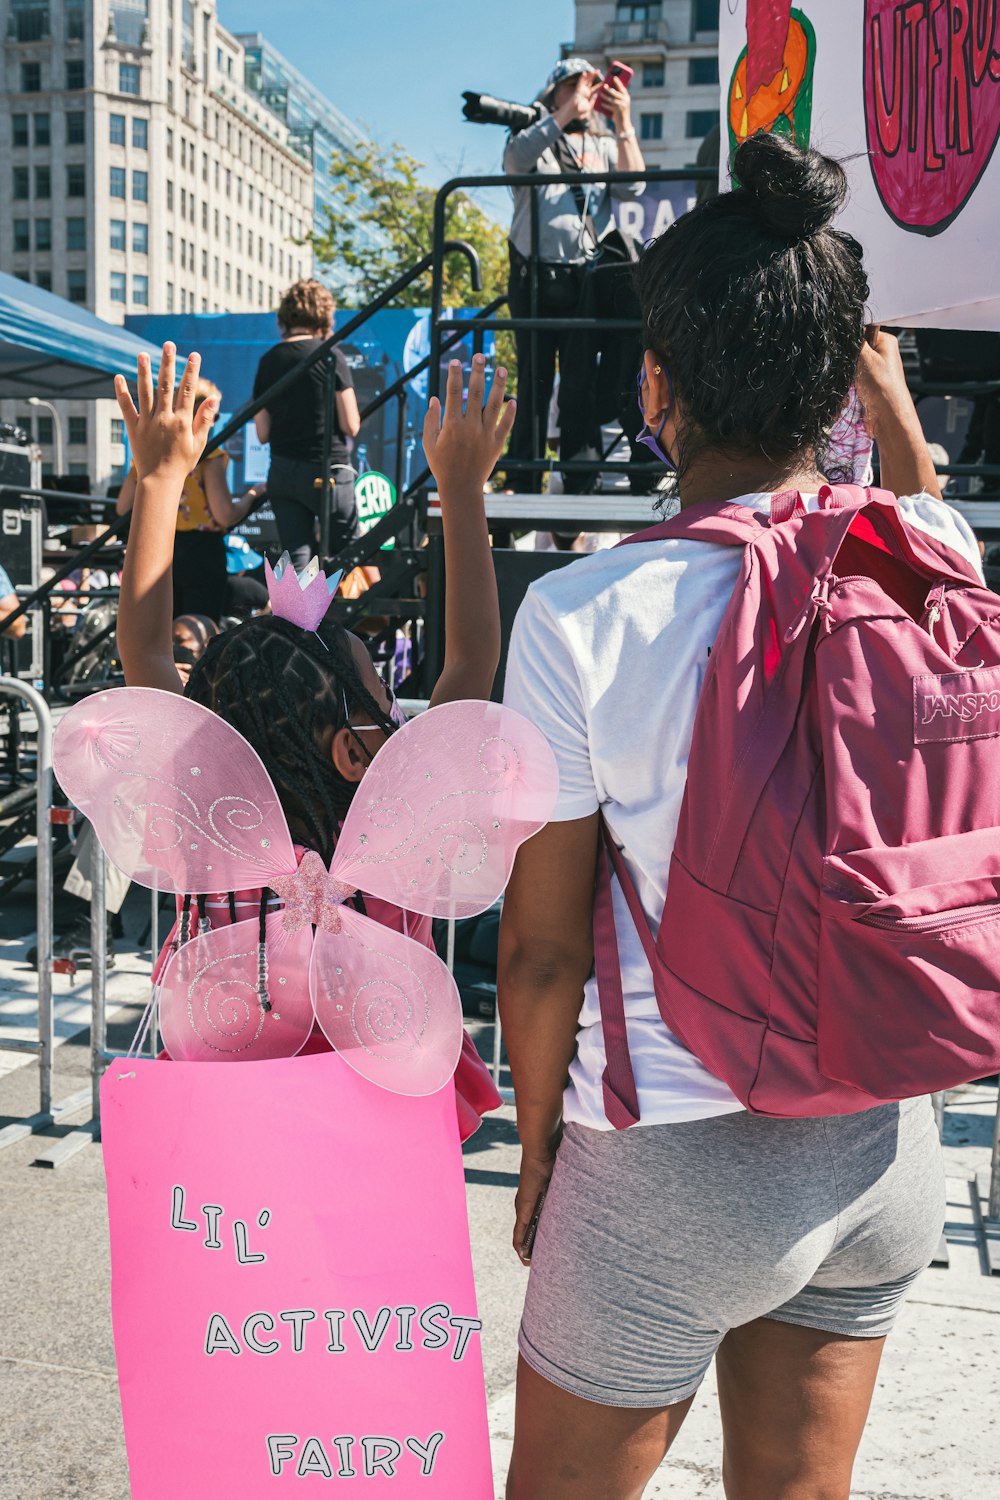 Una mujer con una mochila rosa sostiene un cartel